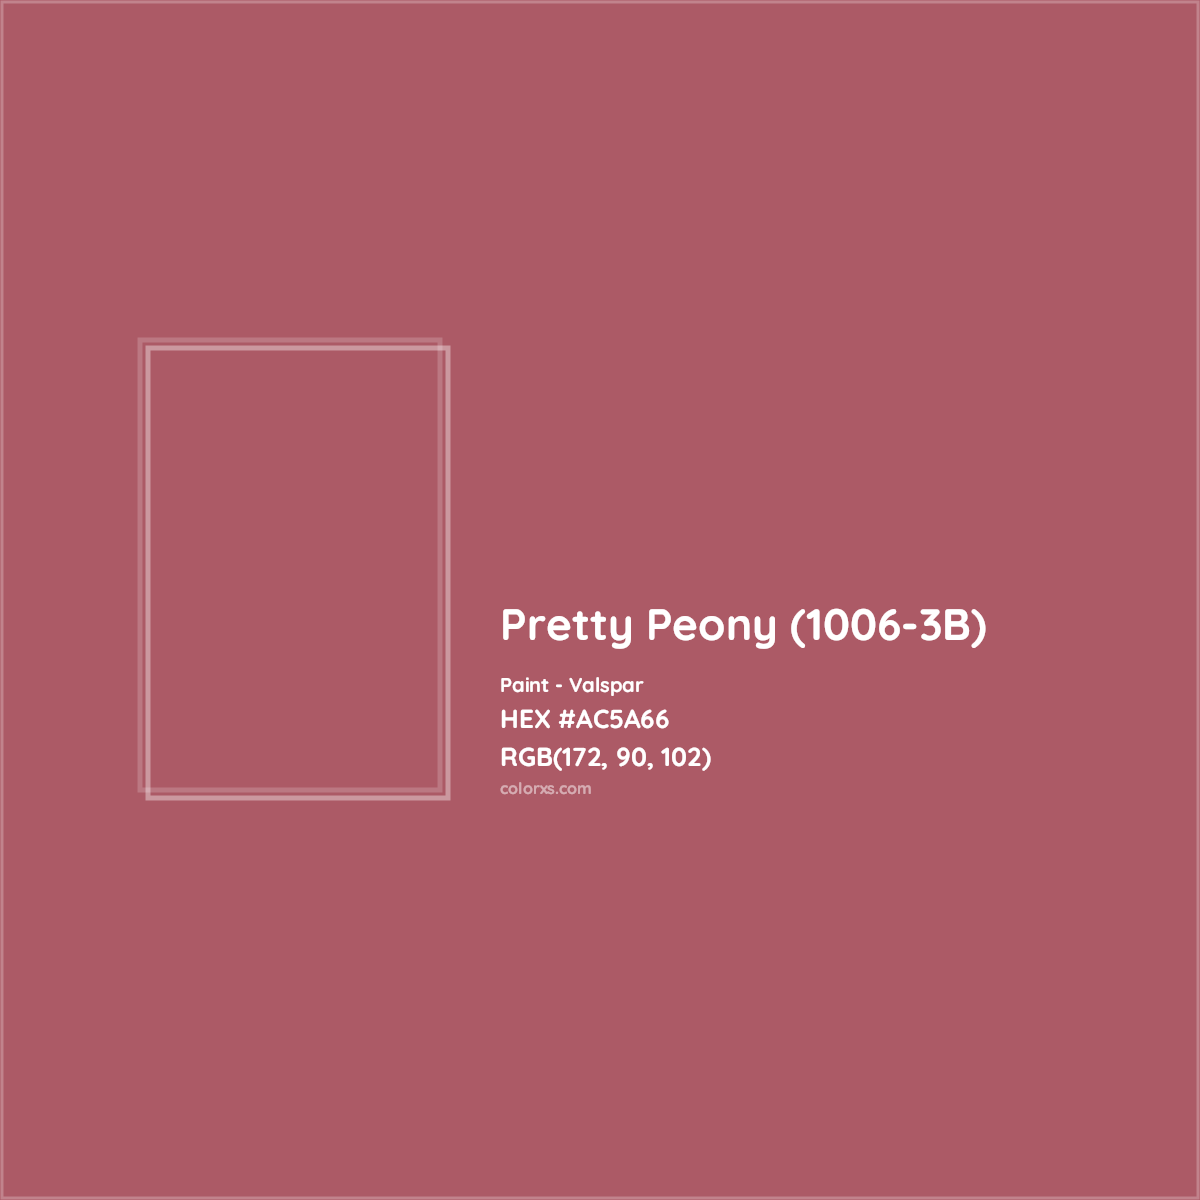 HEX #AC5A66 Pretty Peony (1006-3B) Paint Valspar - Color Code